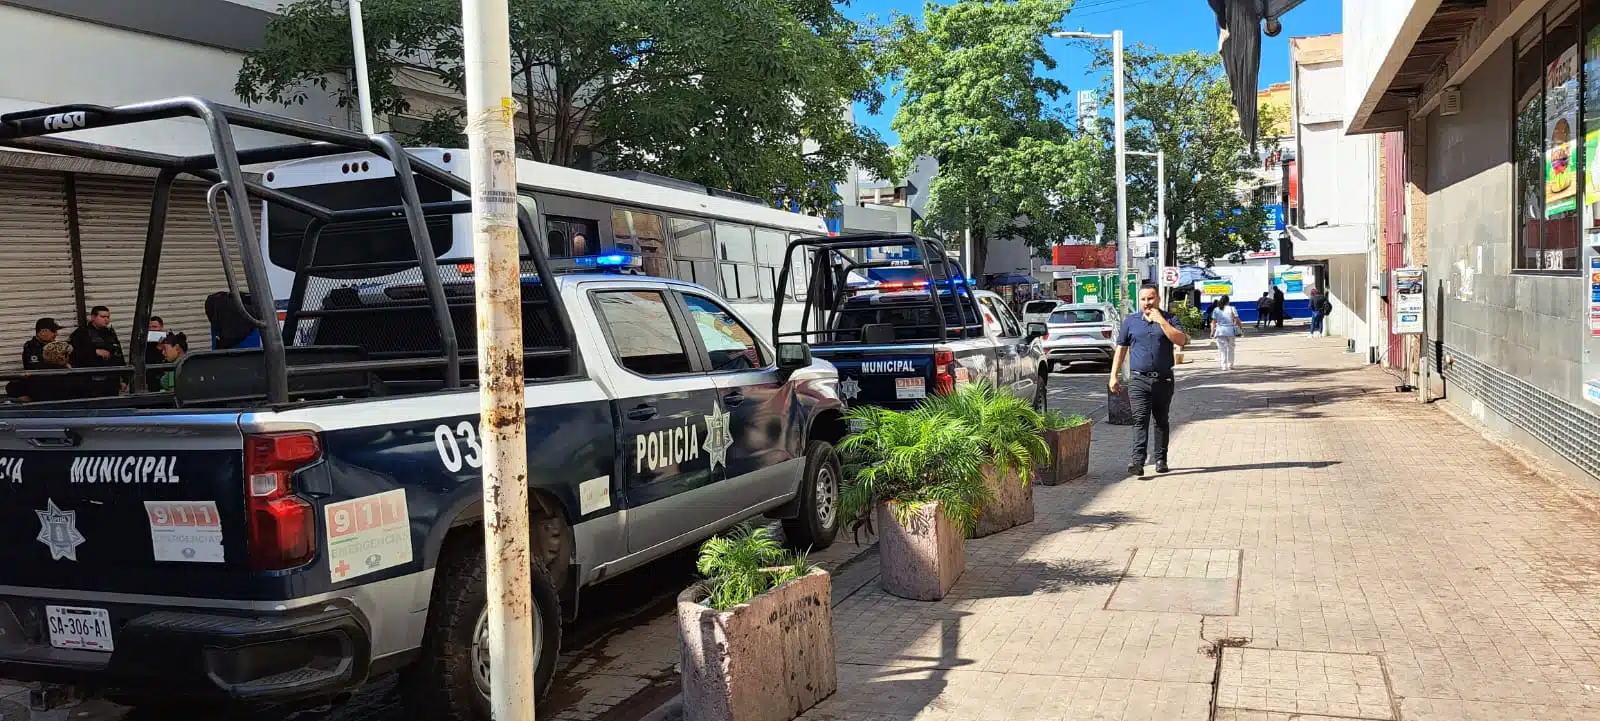 Camioneta estacionada de la Policía Municipal de Culiacán